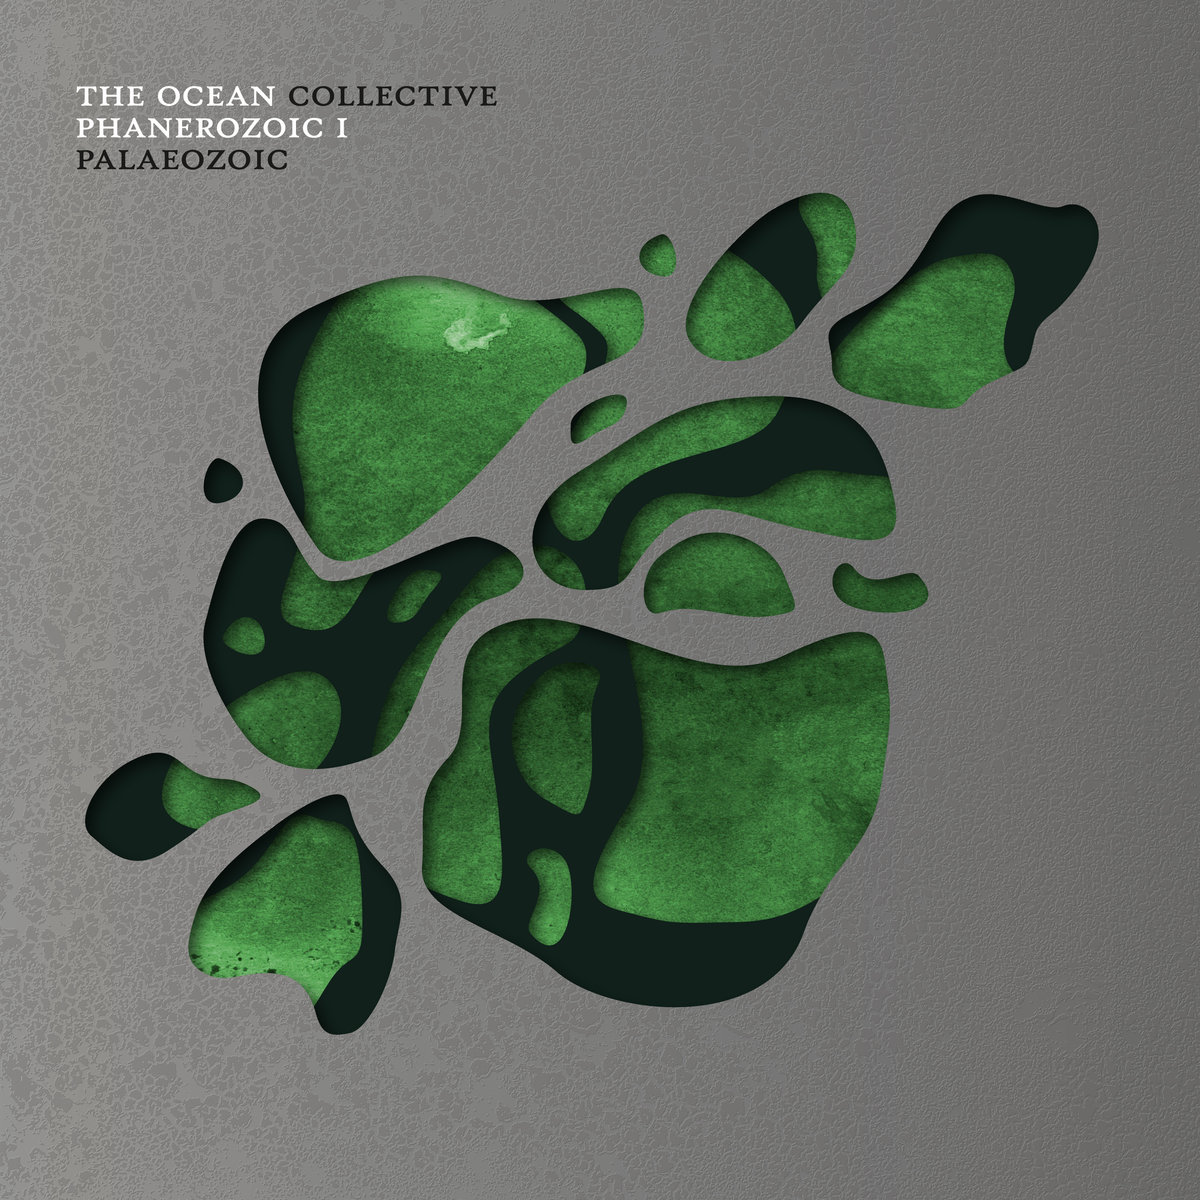 11. THE OCEAN - Phanerozoic I.: Palaeozoic (13 pont)<br /><br />‘A The Ocean ismét nem tudott hibázni, kíváncsi vagyok, vajon valamikor fognak-e. A Phanerozoic I: Palaeozoic méltó folytatása lett mind a tíz évvel ezelőtti, tematikában kapcsolódó albumnak, mind úgy általában a csapat egyre teljesebb, igényesebb életművének. Hatalmas mértékű gondosság, súly, mondanivaló szorult bele ebbe az alkotásba, amely büszkén fog ott ragyogni az év legjobb lemezei között.‘